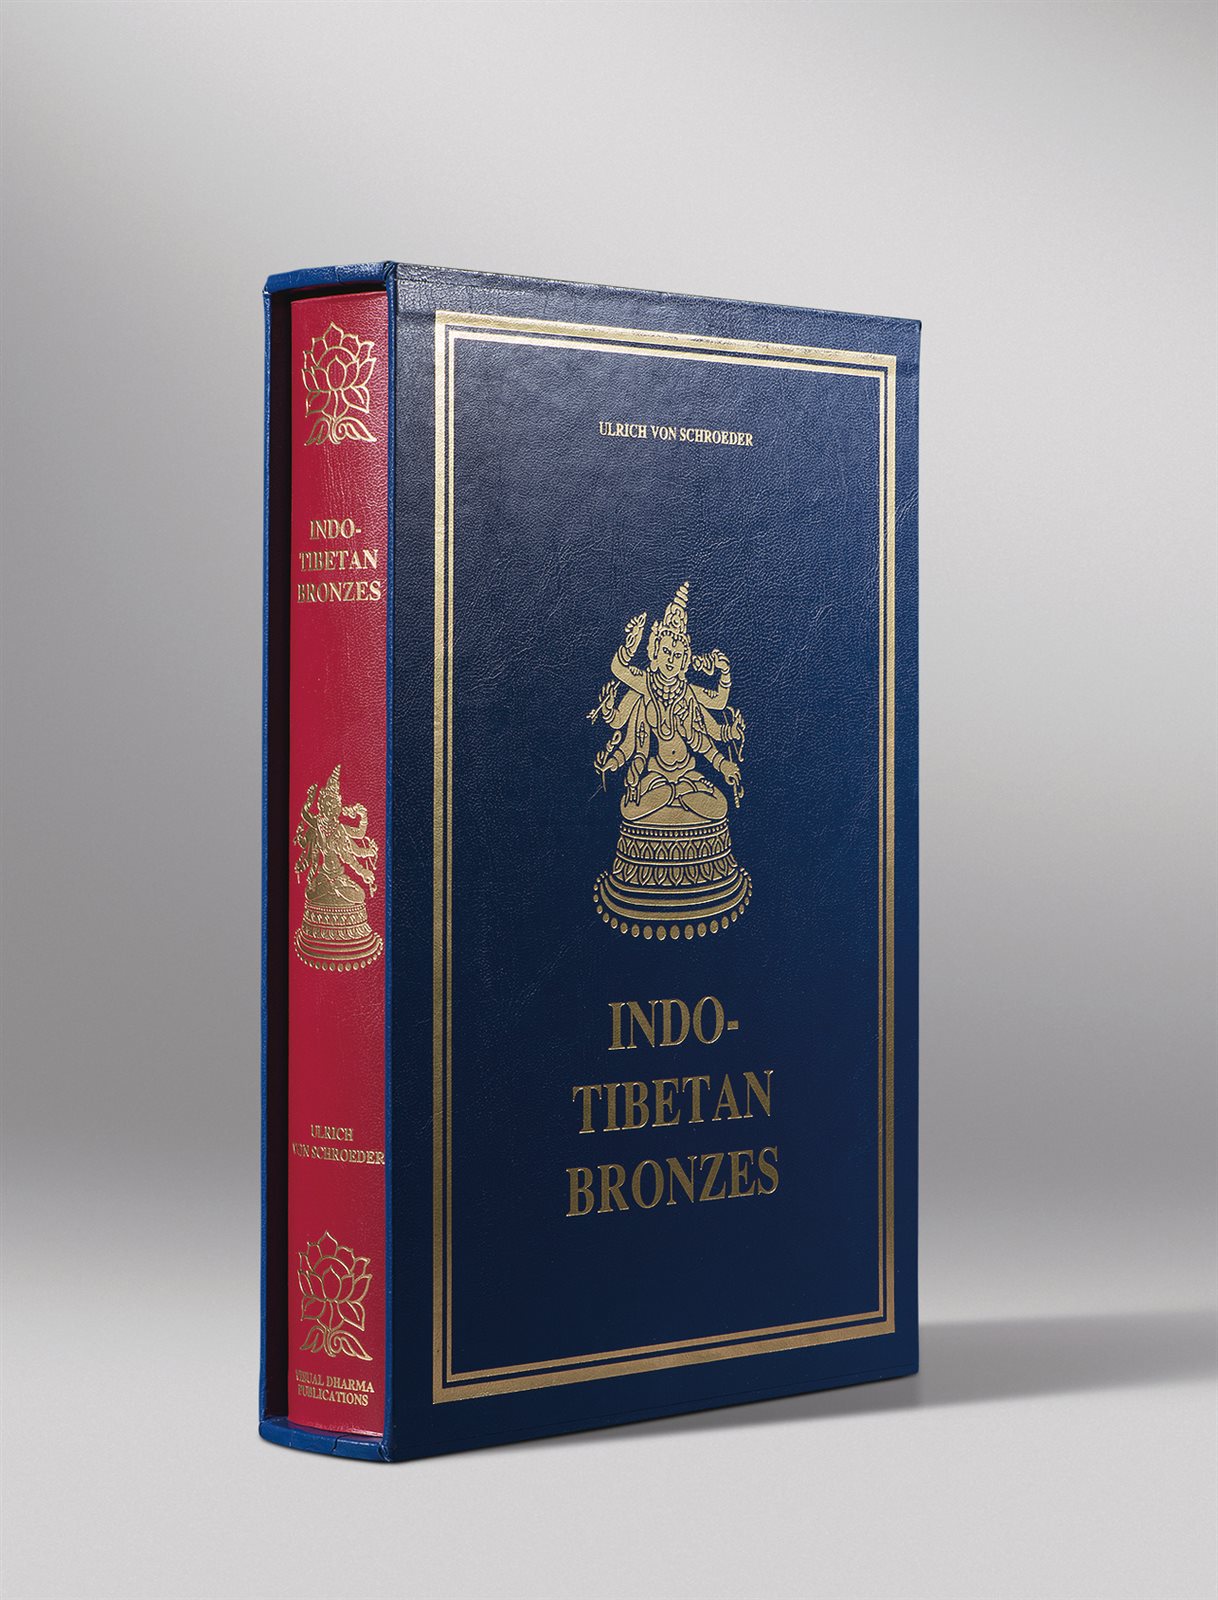 原函精装限量编号《印度与西藏铜造像》